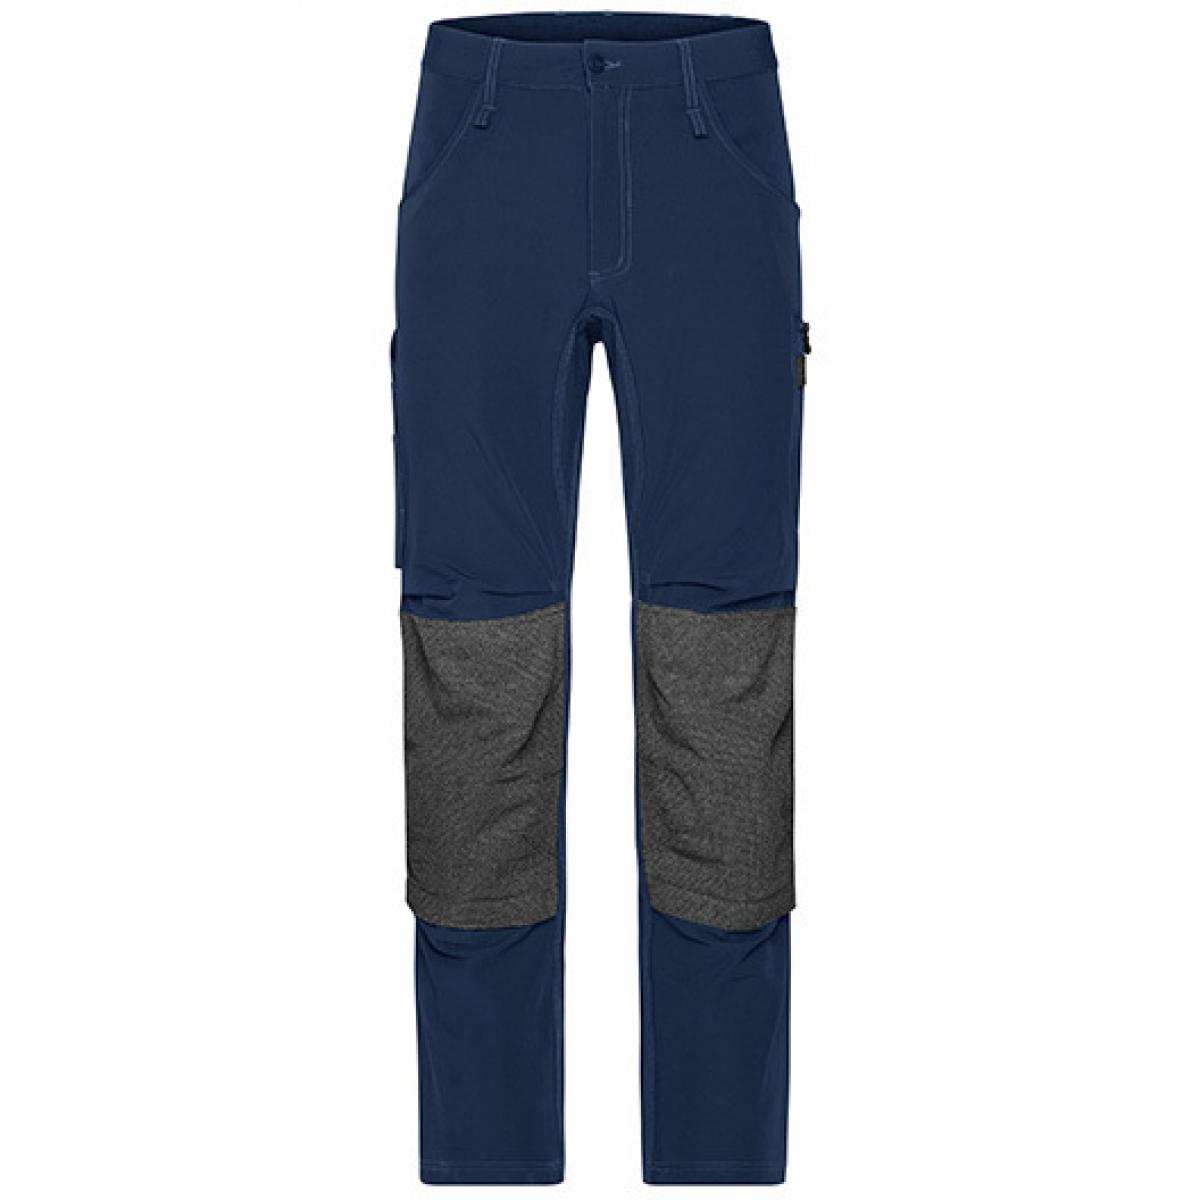 Hersteller: James+Nicholson Herstellernummer: JN1813 Artikelbezeichnung: Workwear Pants 4-Way Stretch Slim Line / Arbeitshose Farbe: Navy